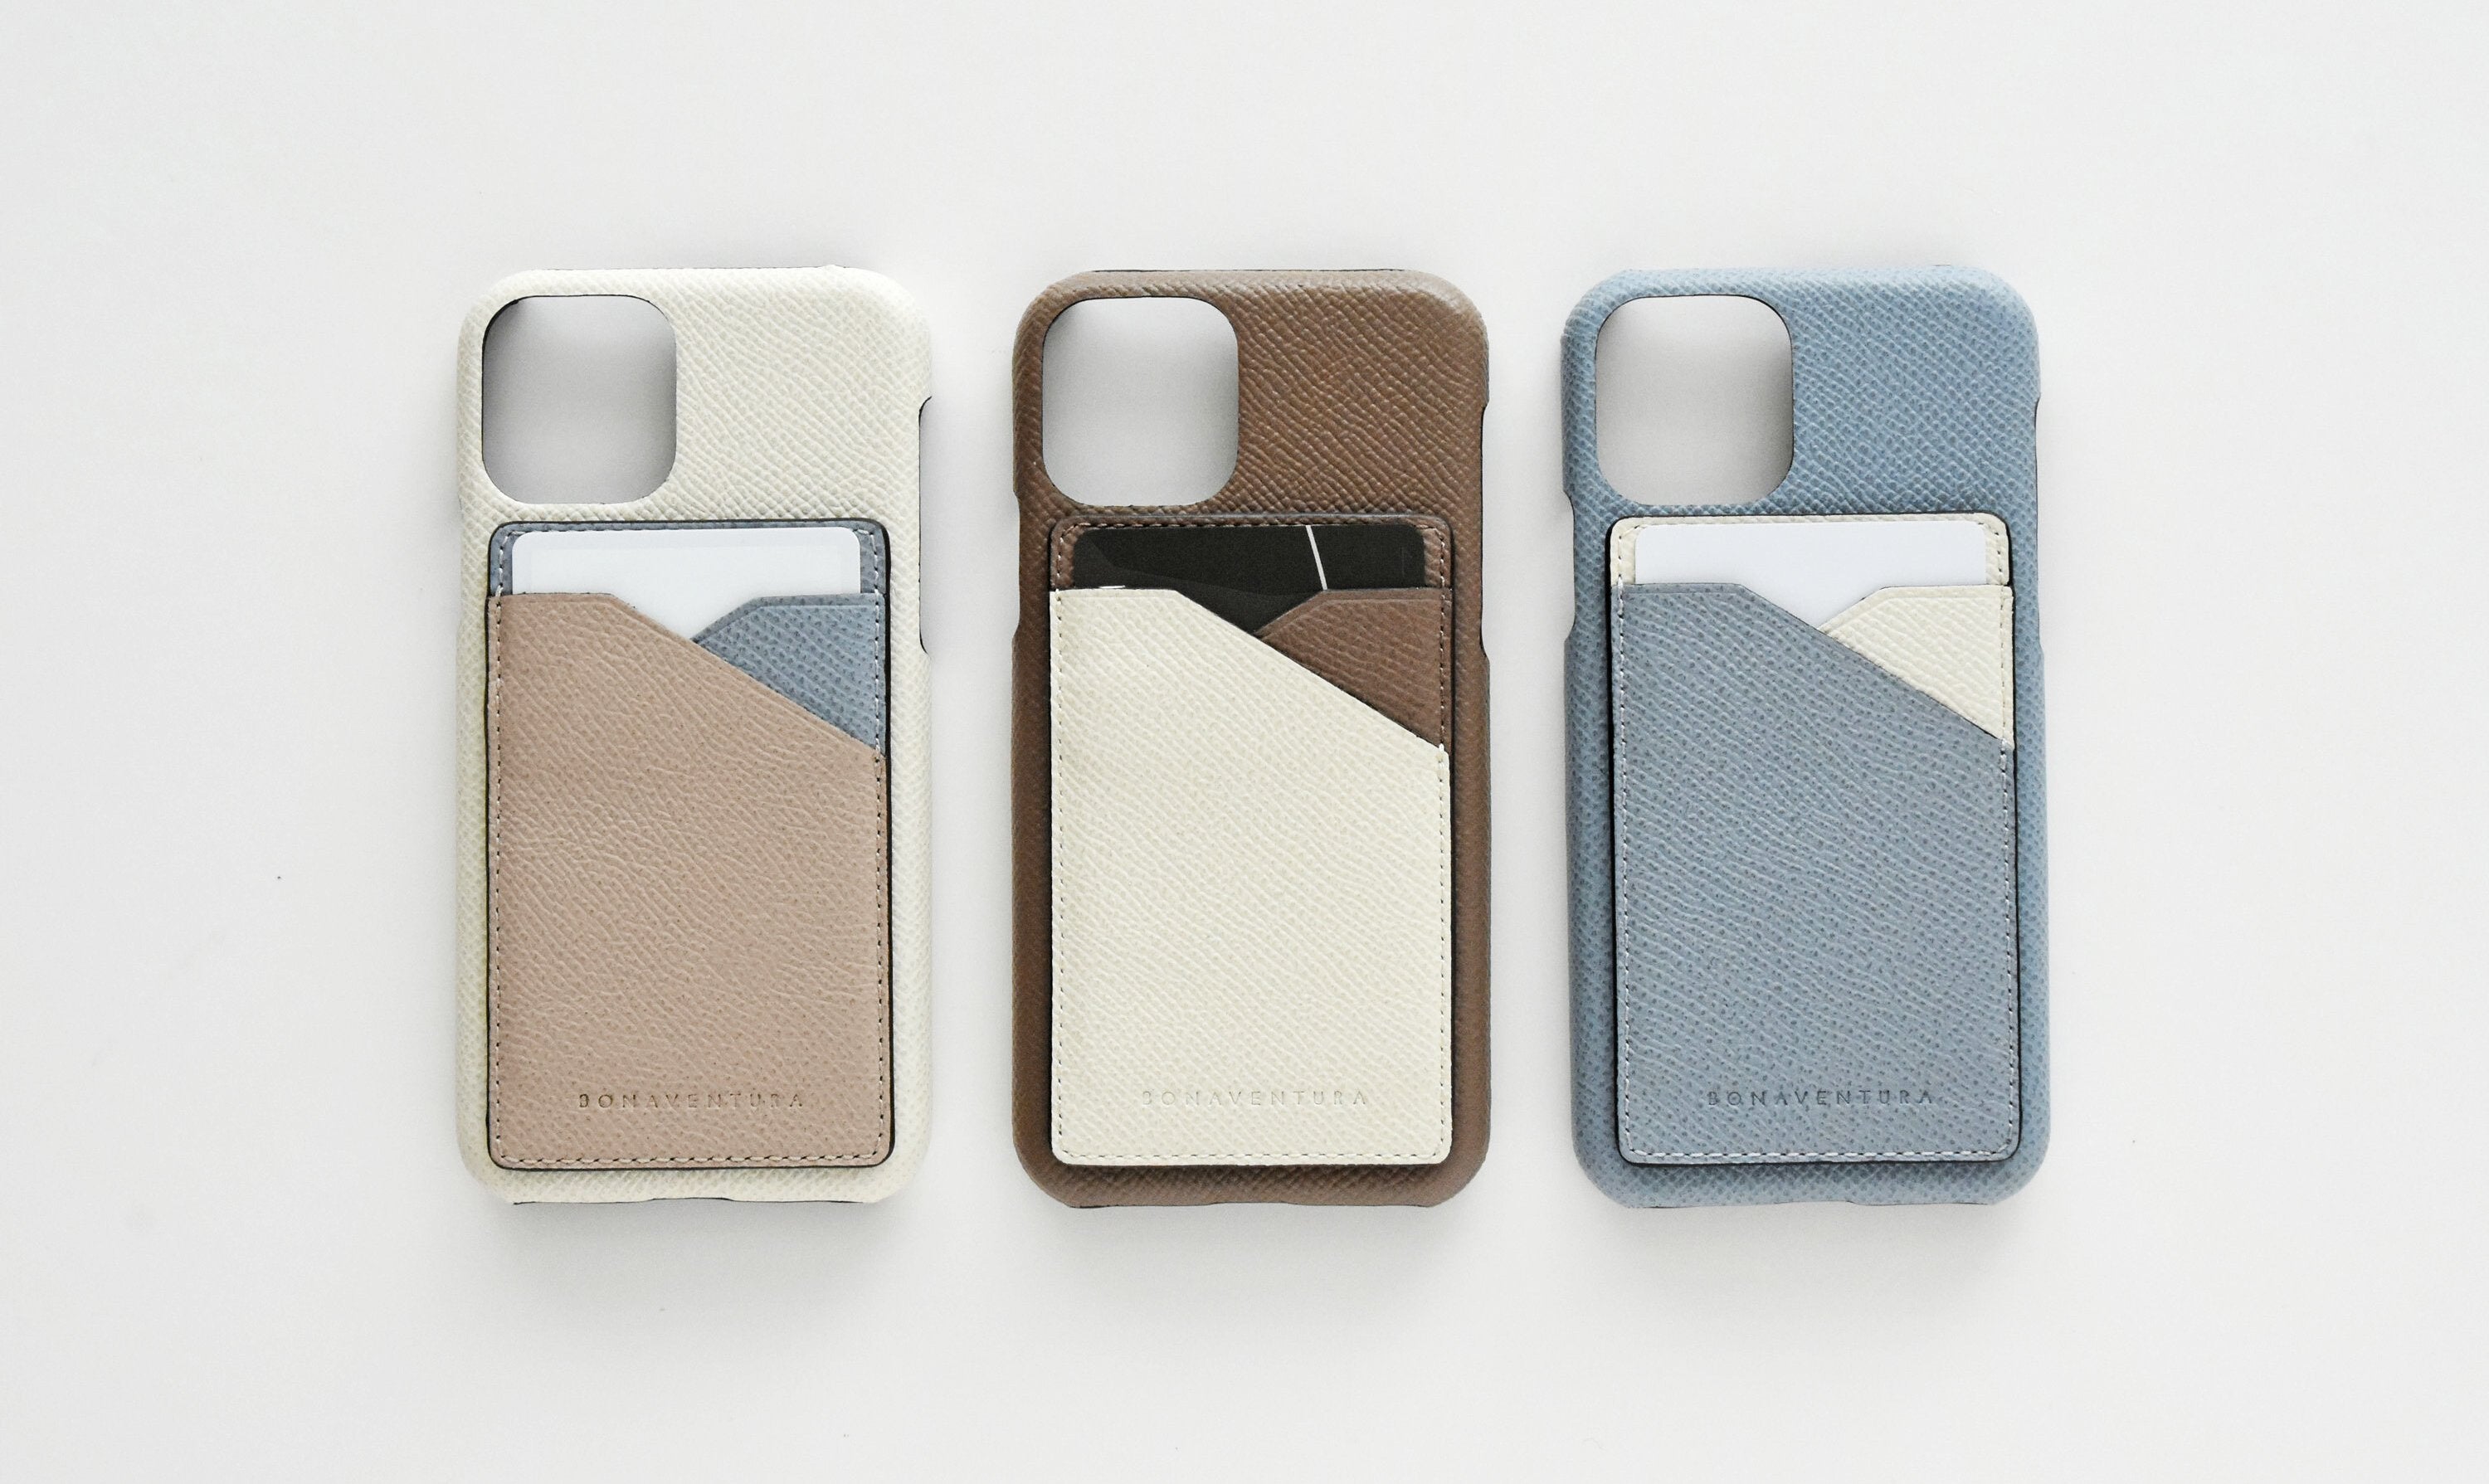 Hochwertige BONAVENTURA iPhone Accessoires aus Noblessa Leder mit abnehmbarem Kartenfach ind verschiedenen Farben.